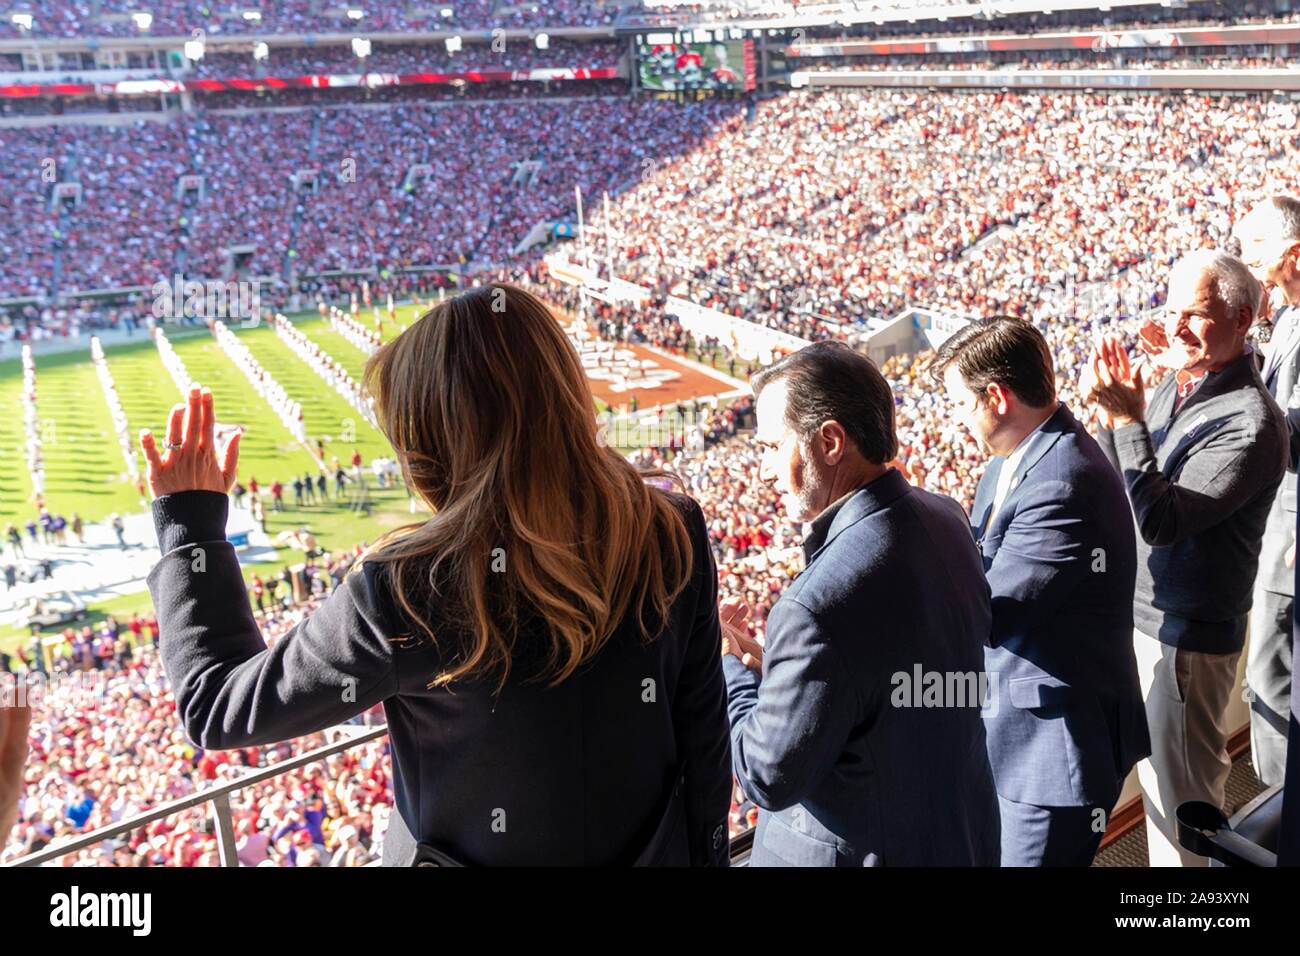 La première dame des États-Unis Melania Trump vagues durant le début de l'Université de l'Alabama contre l'Université d'état de la Louisiane au jeu de football Bryant-Denny Stadium le 9 novembre 2019 à Tuscaloosa, Alabama. Banque D'Images